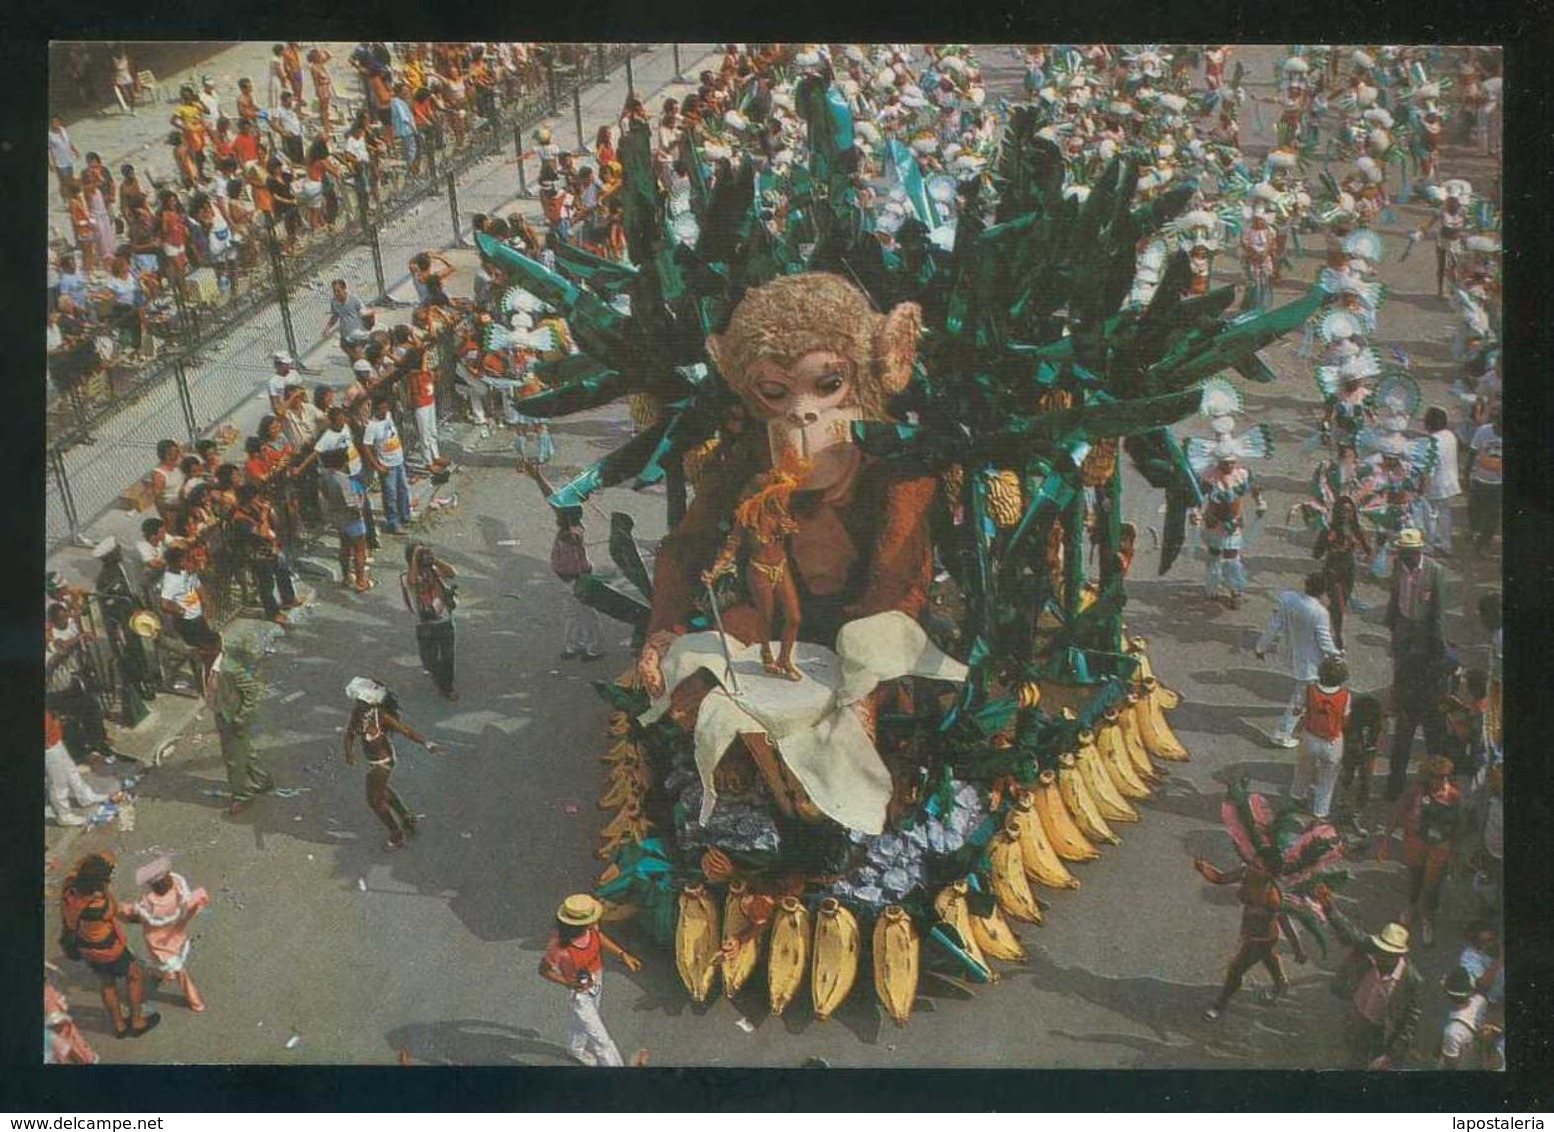 Río Janeiro. *Carnaval - Alegoria Da Estaçao Primeira Da Mangueira* Nueva. - Rio De Janeiro